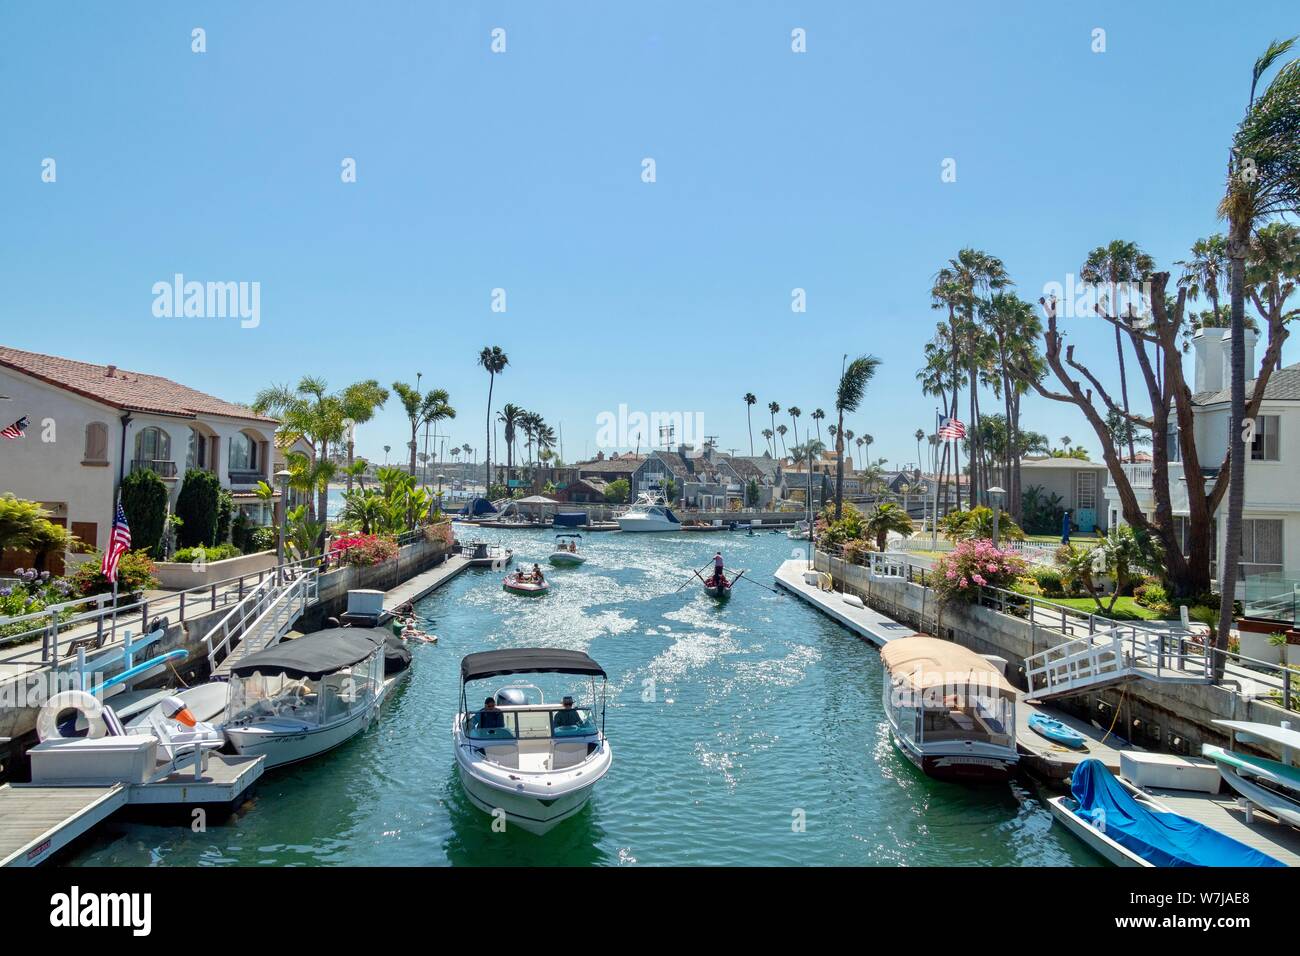 Des canaux dans le quartier de l'île de Naples de Long Beach Californie Banque D'Images